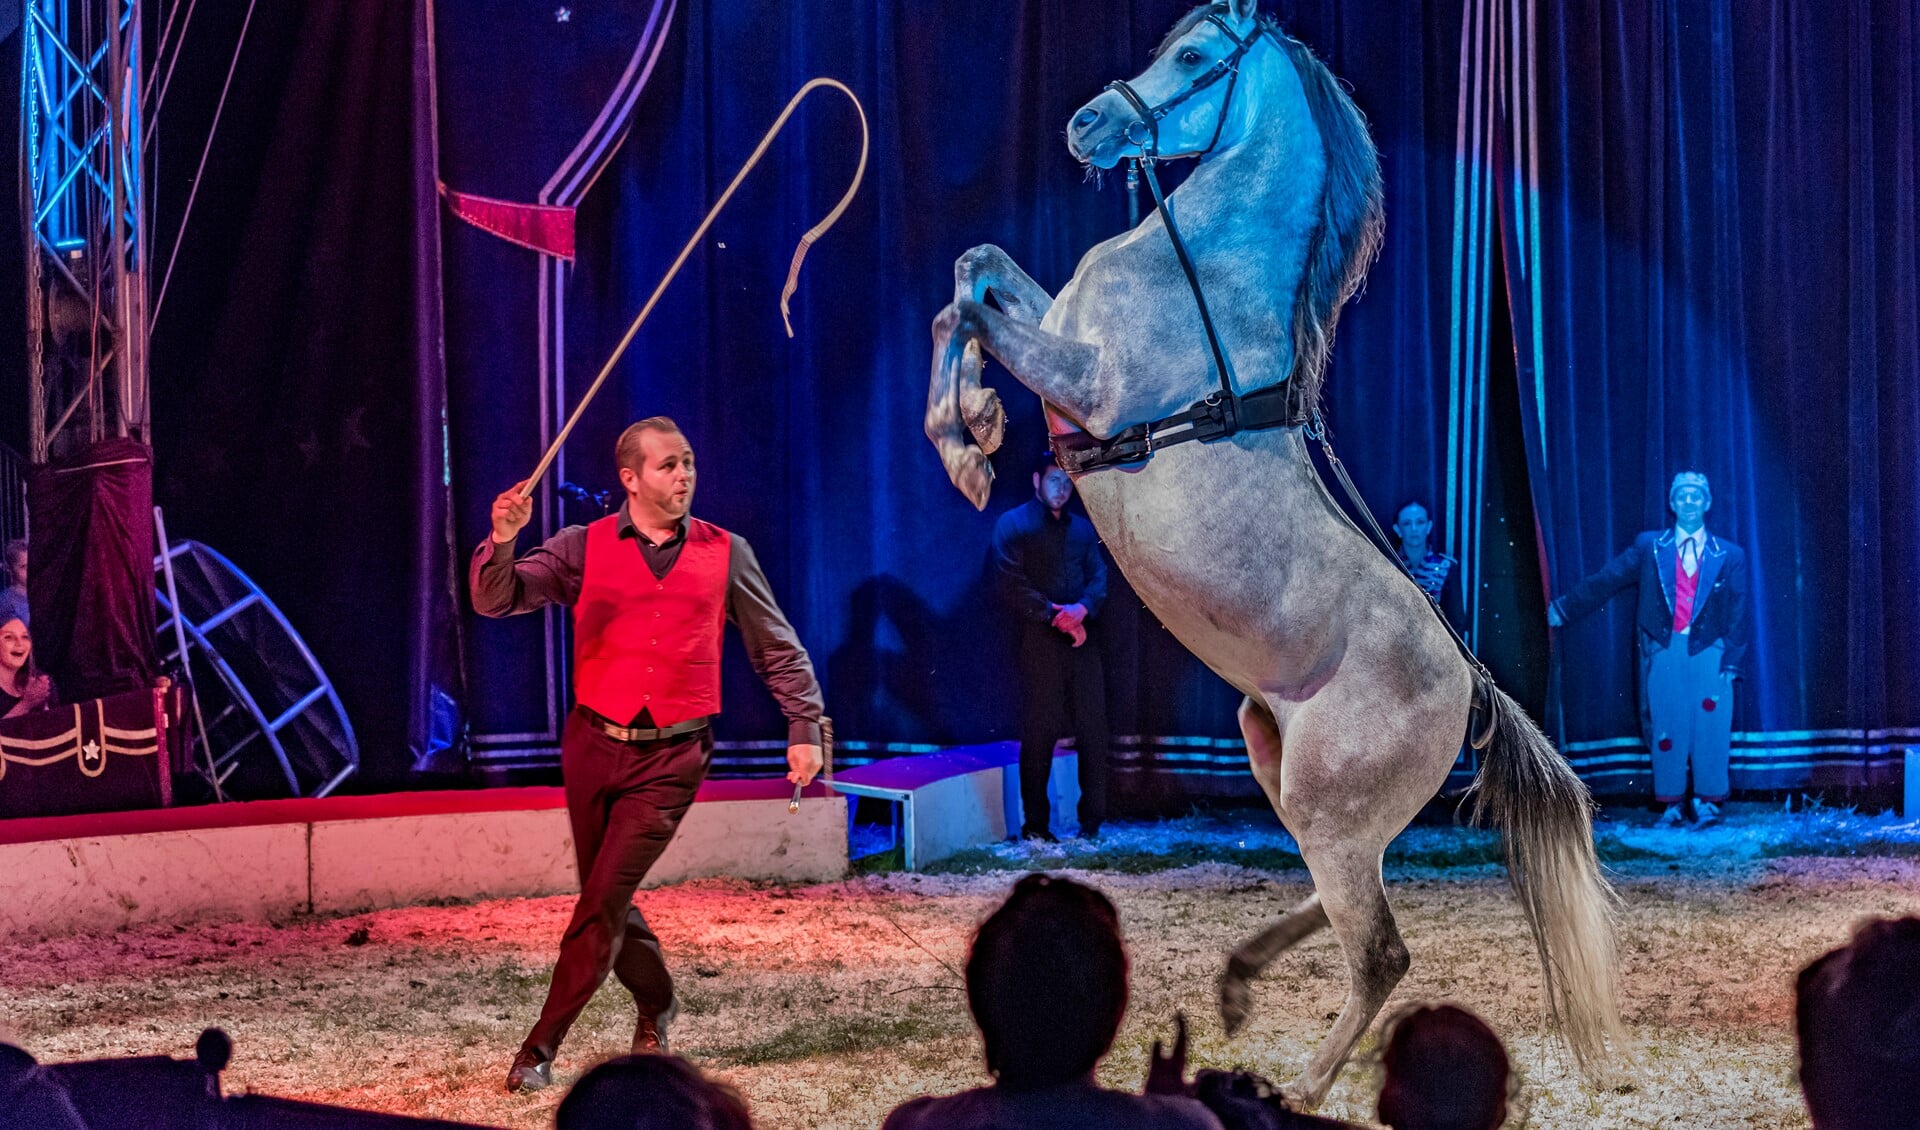 Paardendressuur is één van de pijlers van circus Renz International. 